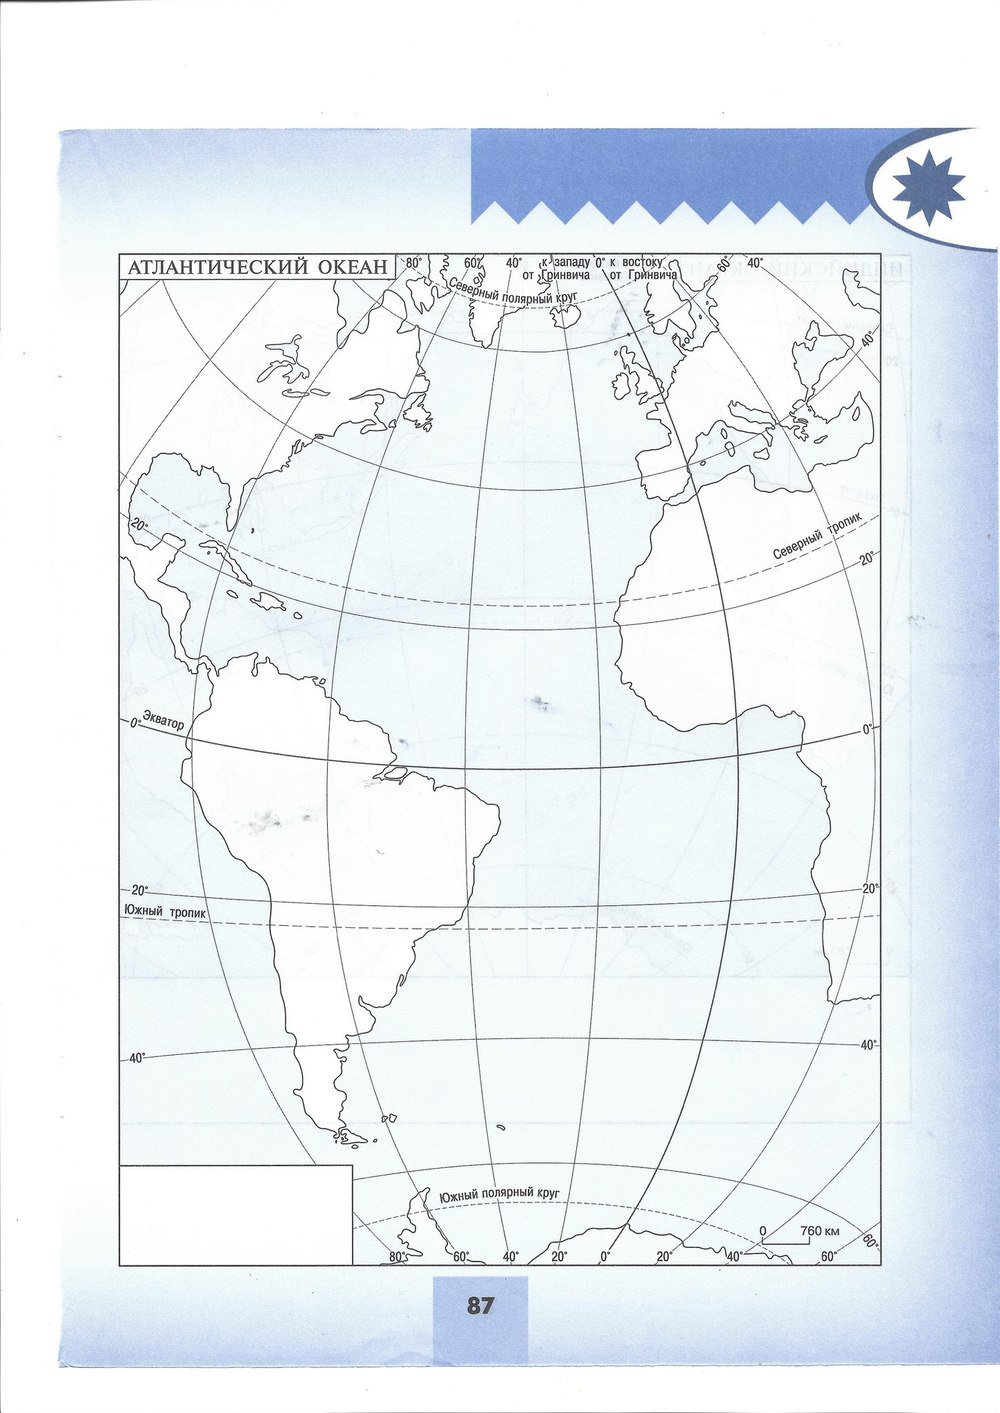 Контурная карта география 7 класс 12 13. Контурная карта по географии 7 класс Атлантический океан. Контур карта география 7 класс Атлантический океан. Атлантический океан 7 класс география контурная карта. Контурная карта Атлантического океана.